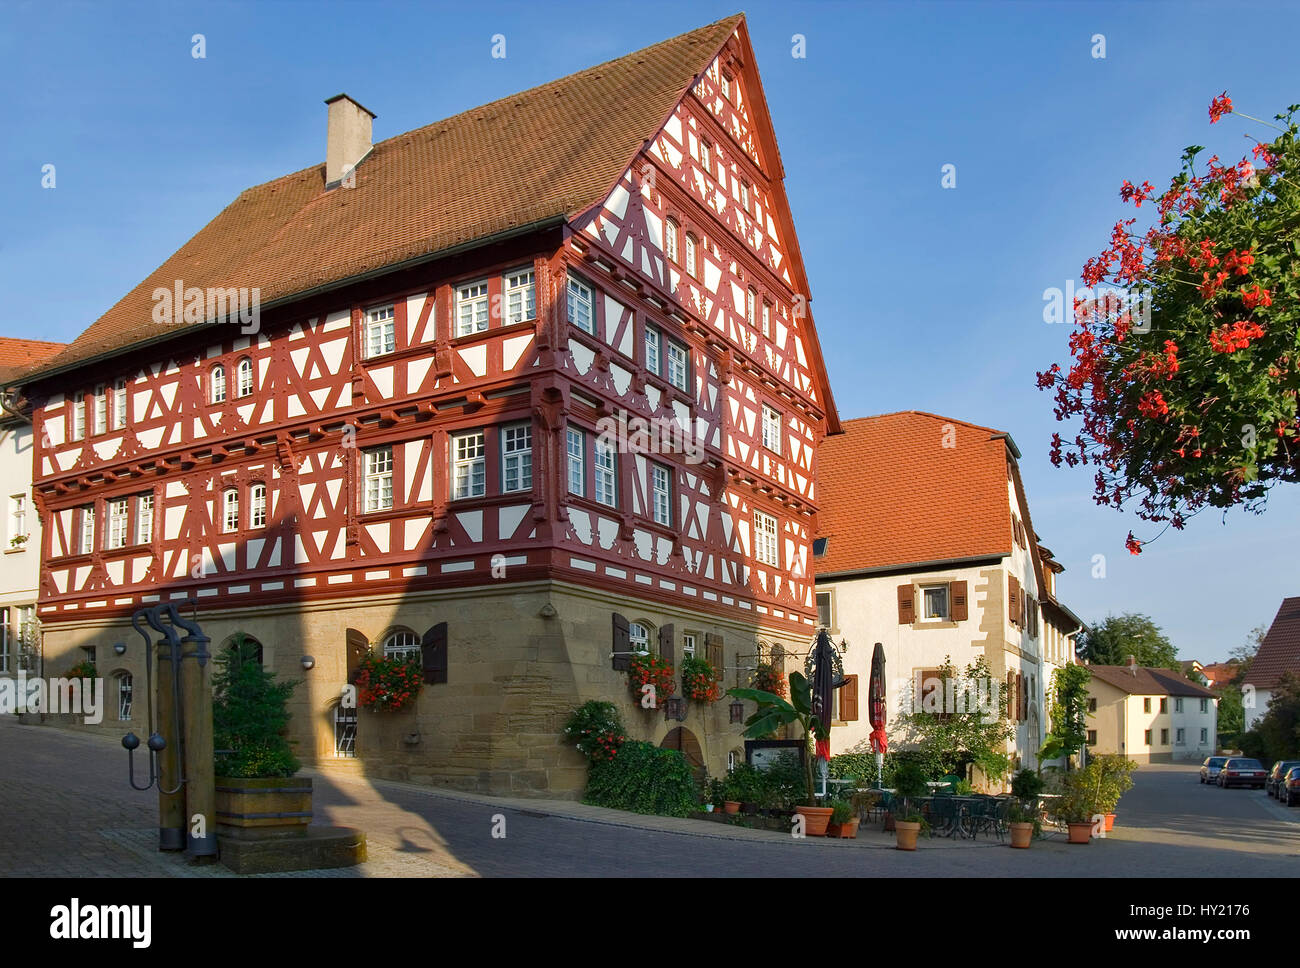 Das Baumansche Haus, eines der bekanntesten FachwerkhÃ¤user in  der Altstadt von Eppingen in Baden Wuertemberg, SÃ¼ddeutschland.  The Baumansche House Stock Photo